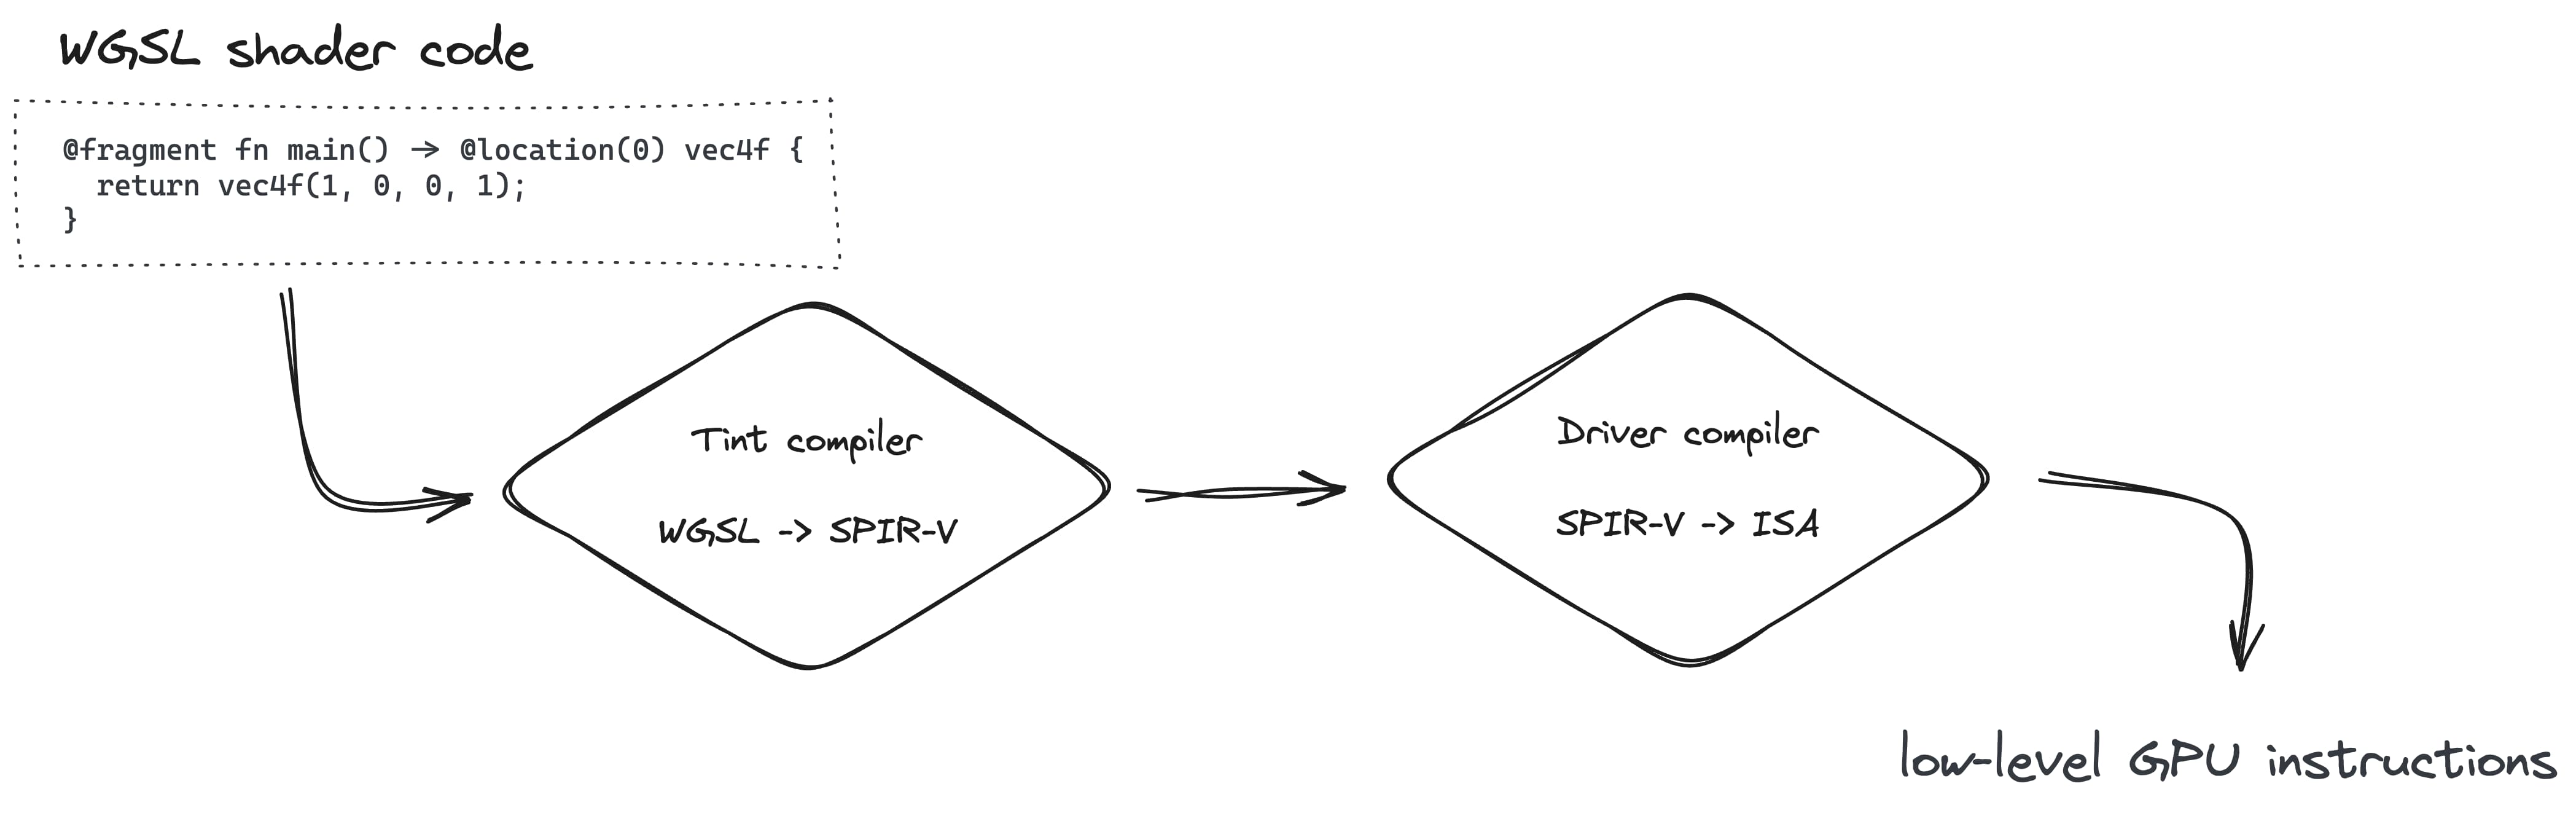 La creazione di pipeline di rendering prevede la conversione di WGSL in SPIR-V con il compilatore Tint, quindi in ISA con il compilatore Driver.